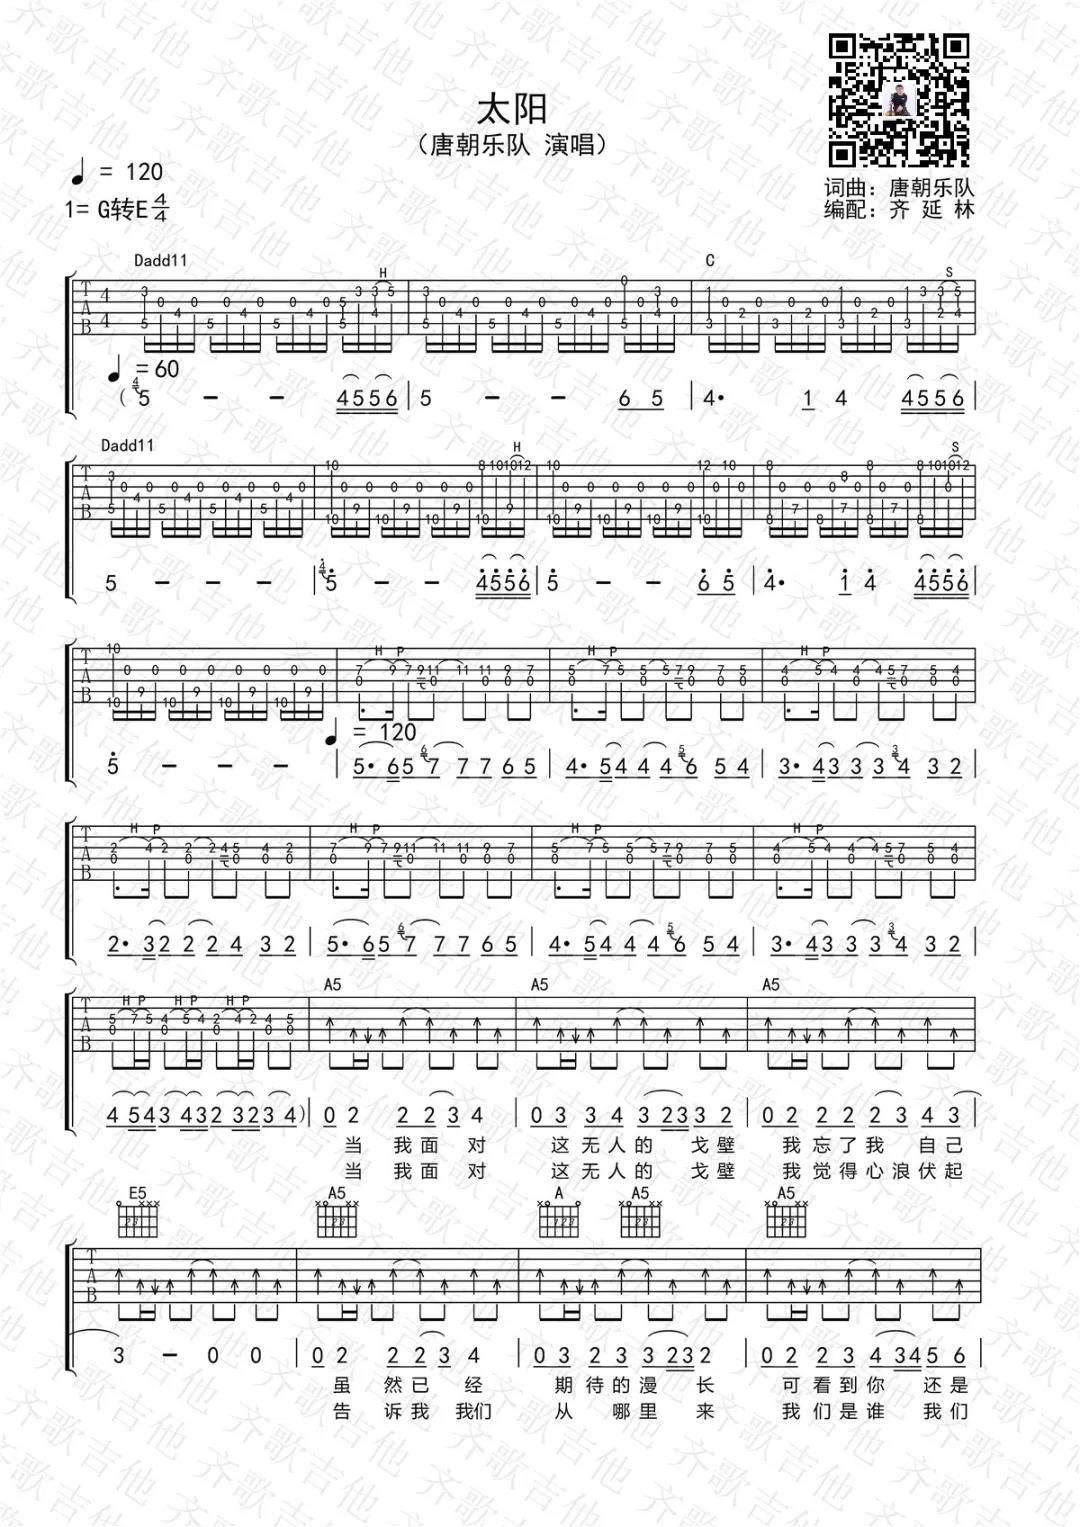 唐朝乐队《太阳》吉他谱(G调)-Guitar Music Score